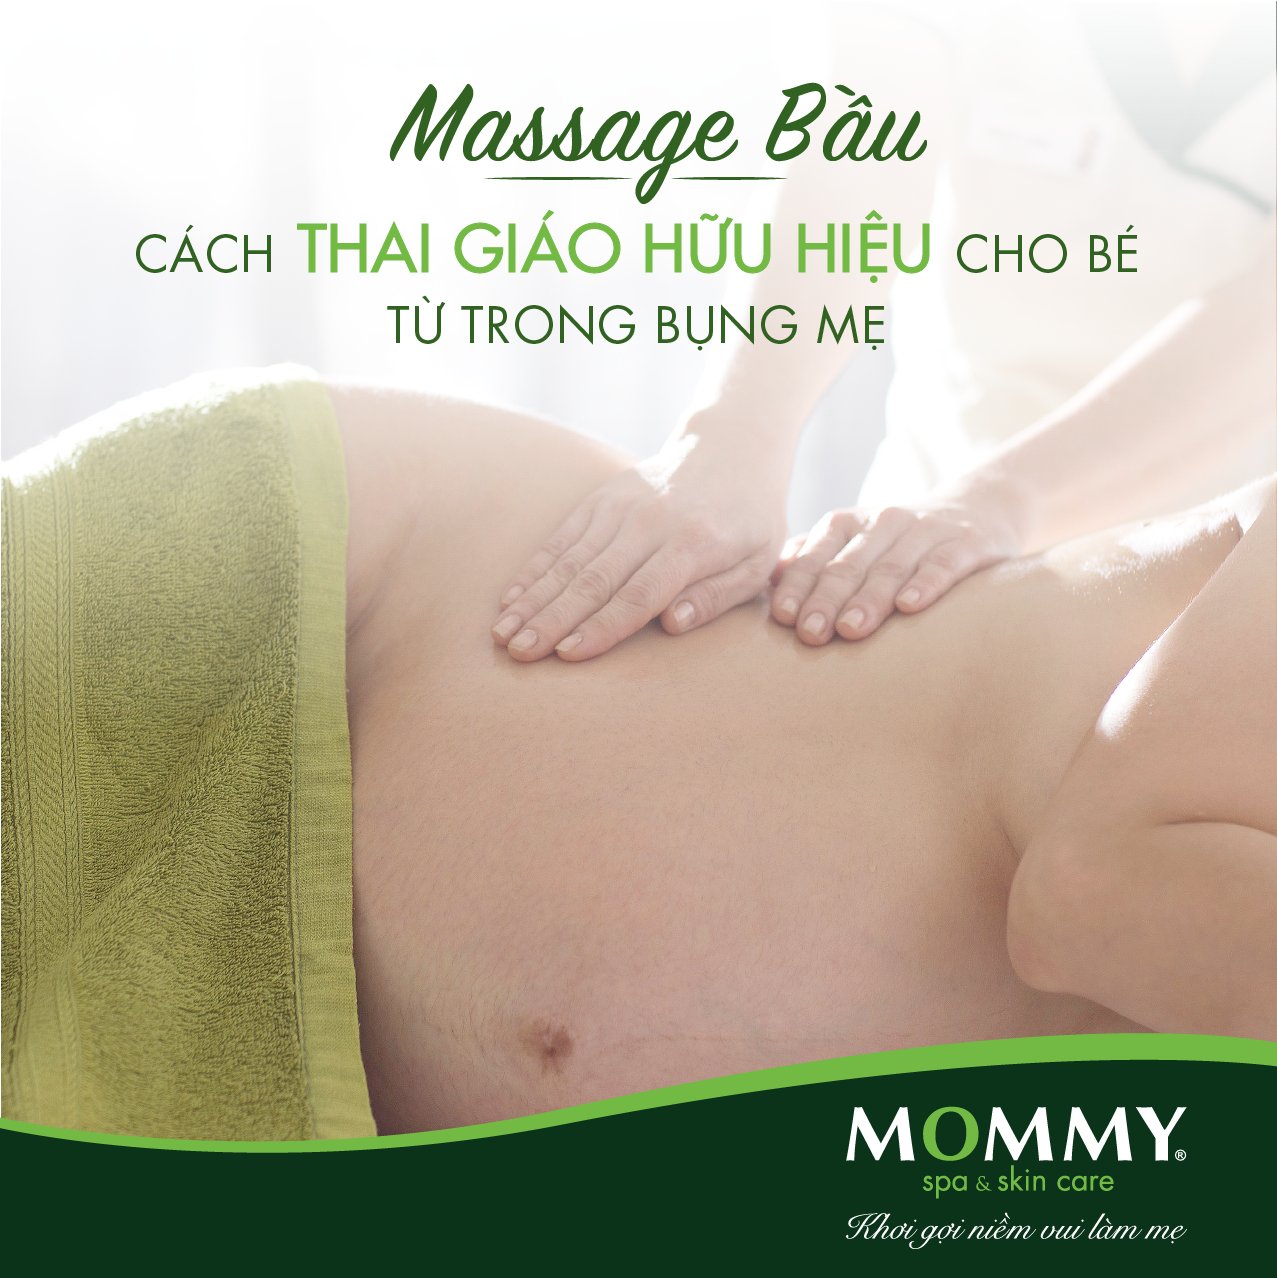 Massage bầu - thai giáo hữu hiệu cho bé từ trong bụng mẹ